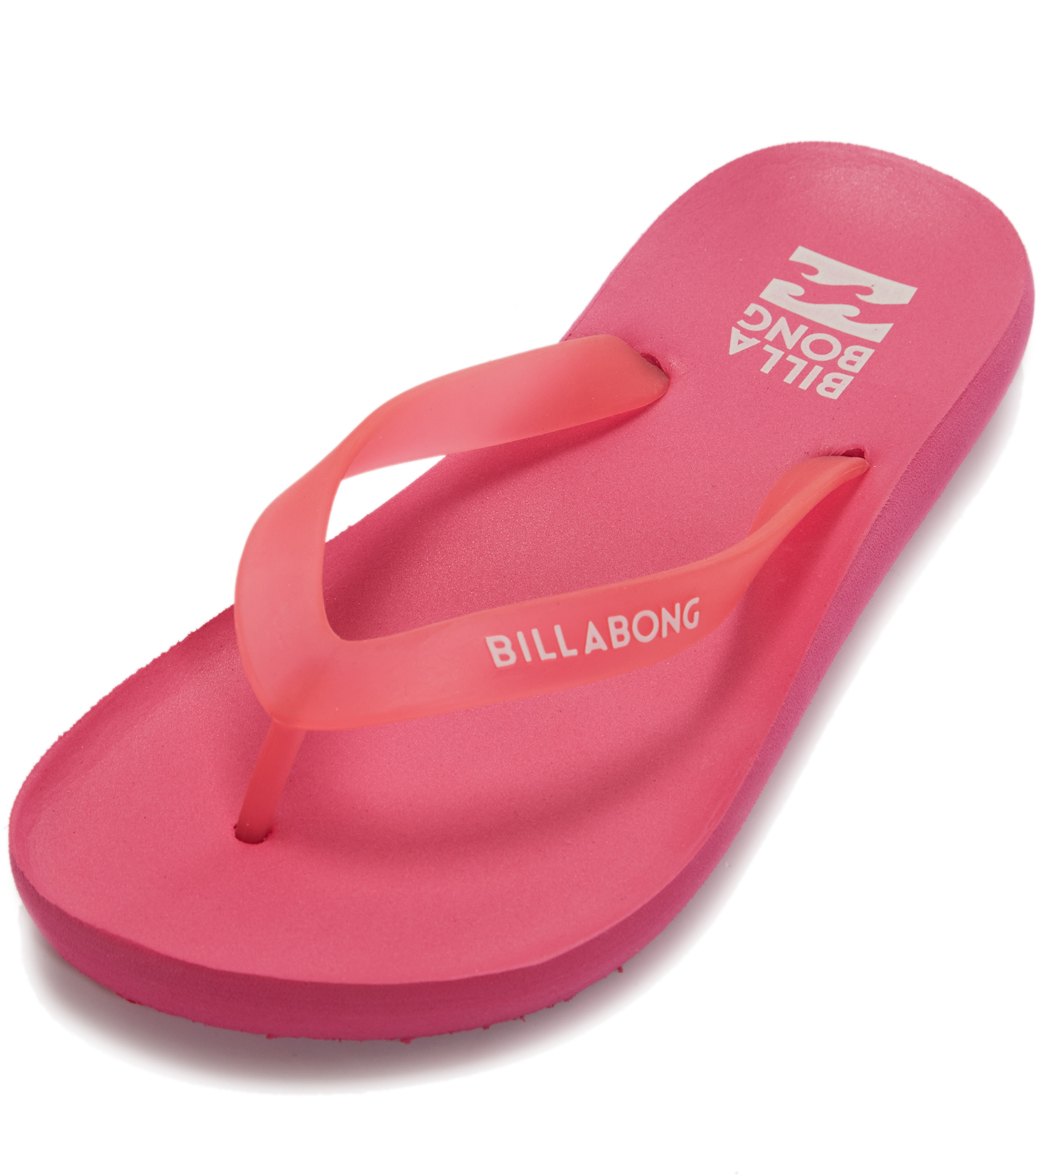 billabong flip flops canada